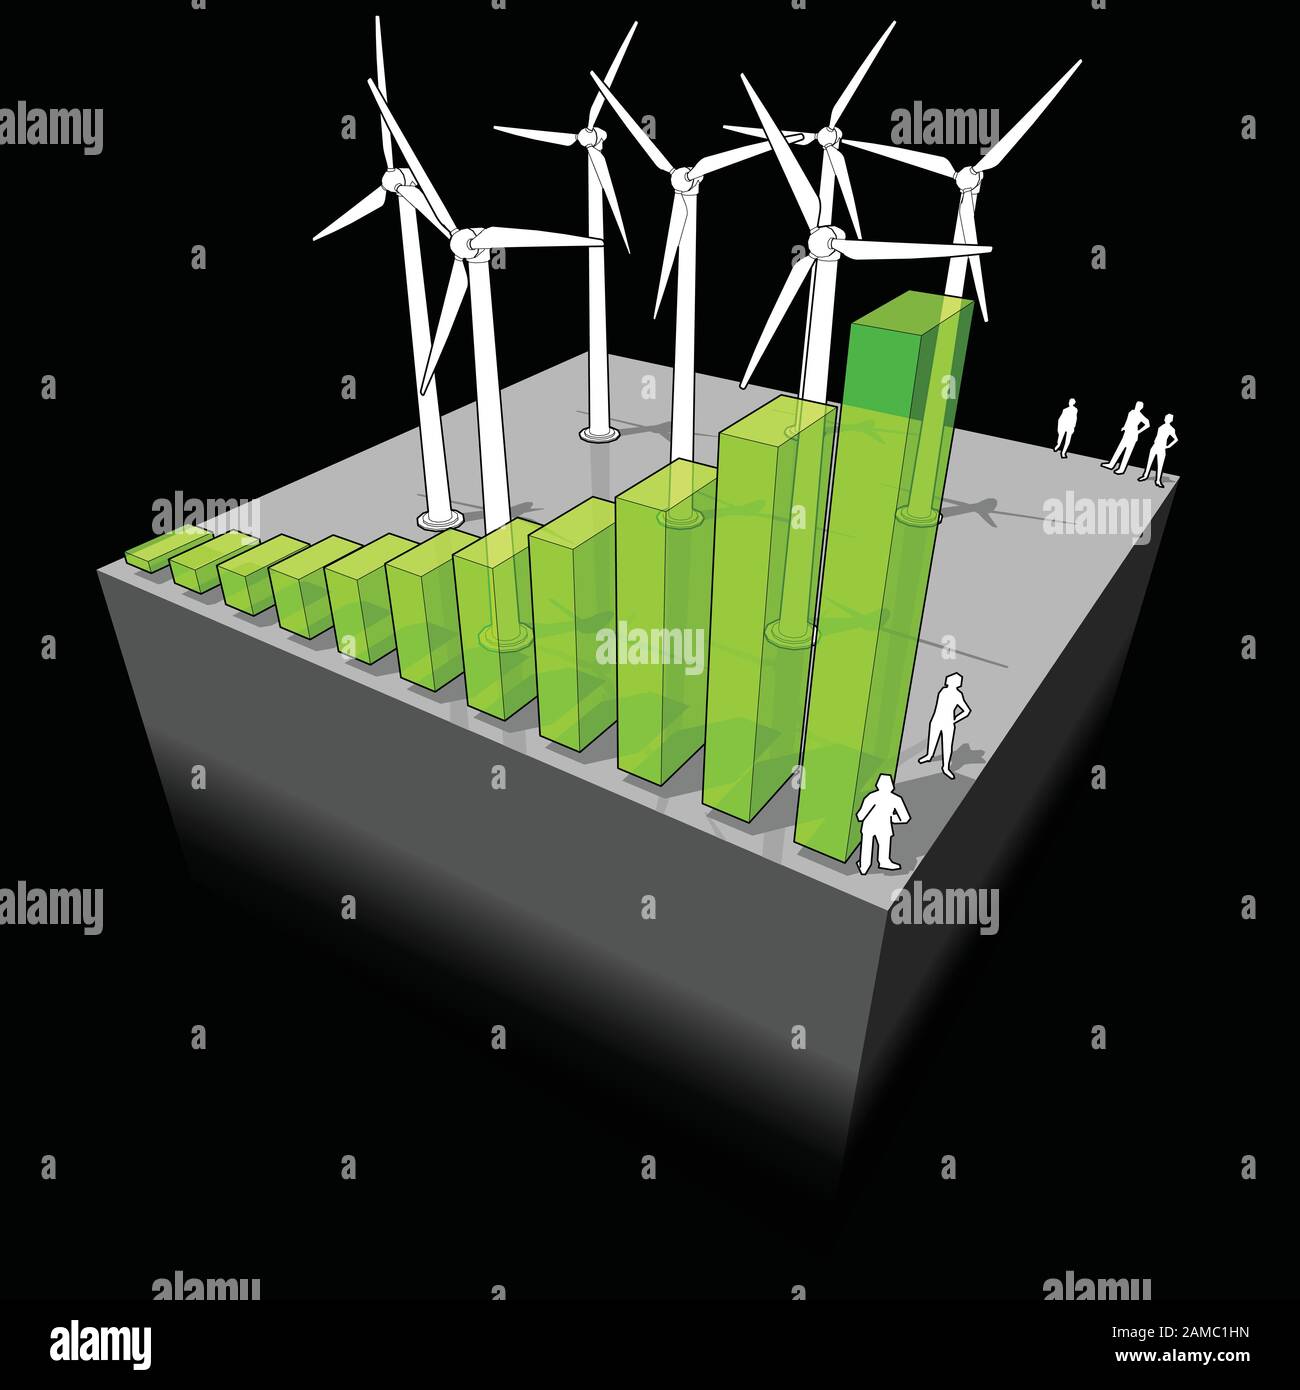 Diagramma di un'azienda agricola di turbine eoliche con diagramma a barre crescente che significa l'importanza crescente o il boom dell'industria dell'energia eolica Illustrazione Vettoriale